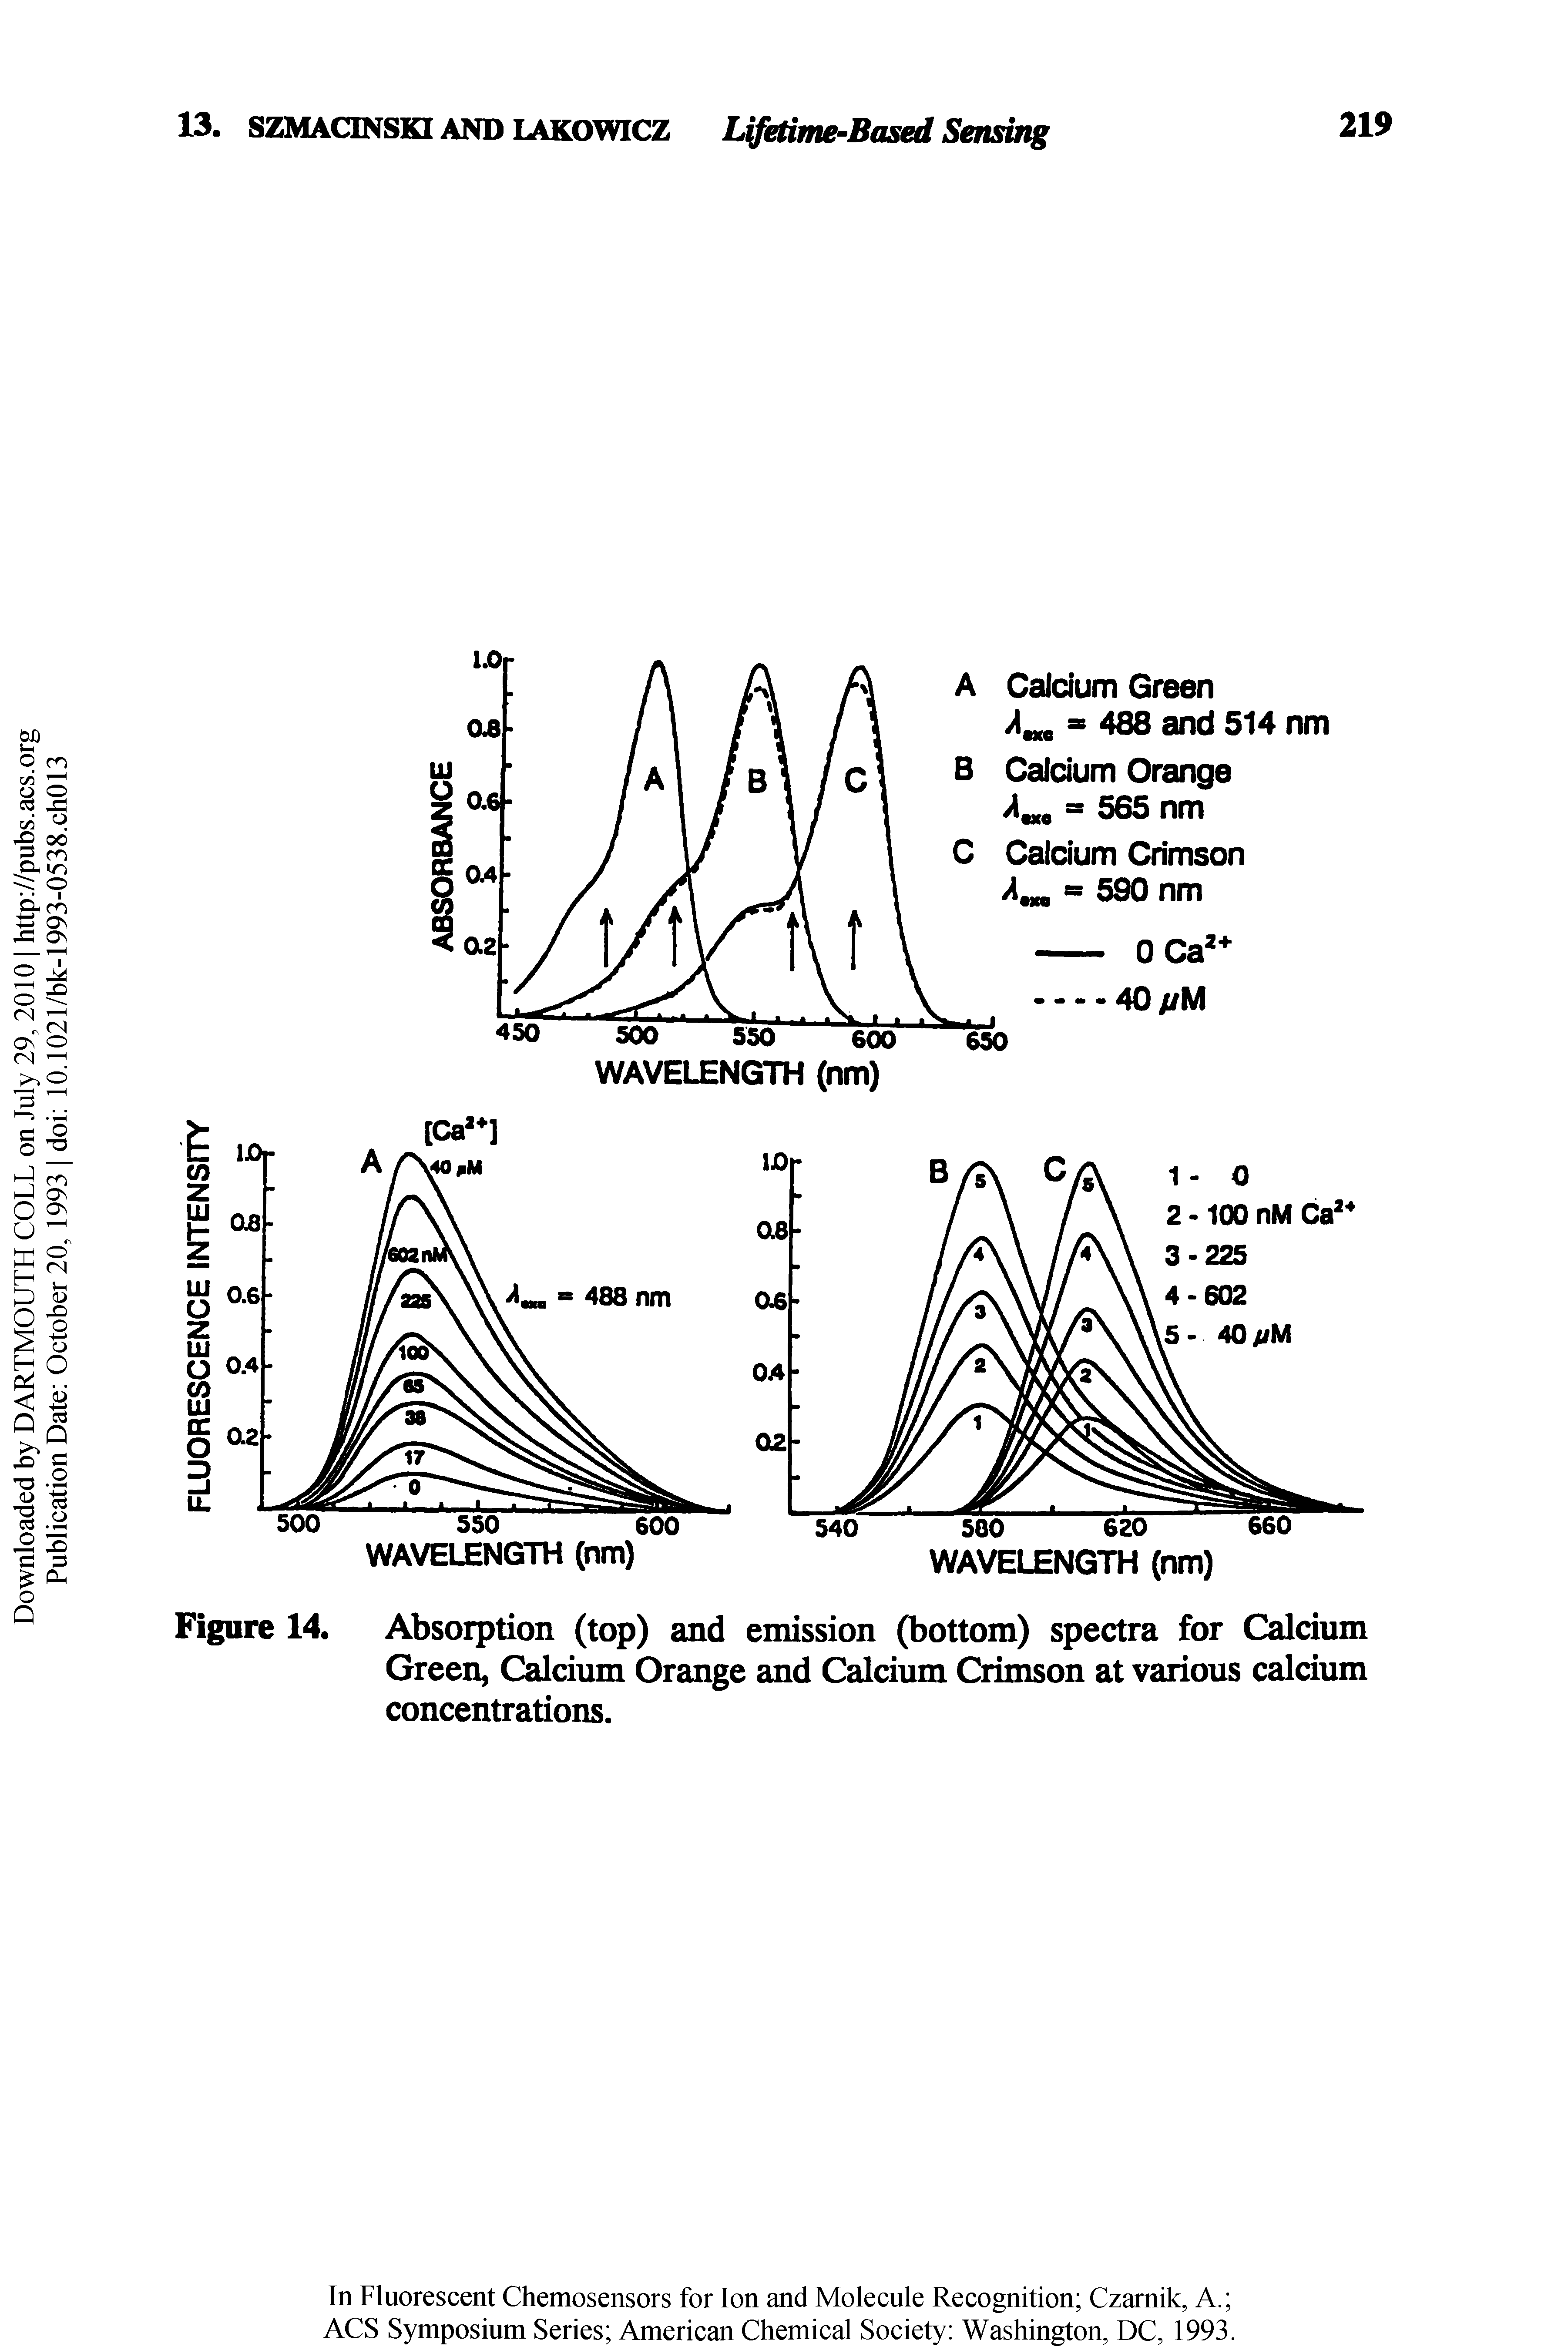 Figure 14. Absorption (top) and emission (bottom) spectra for Calcium Green, Calcium Orange and Calcium Crimson at various calcium concentrations.